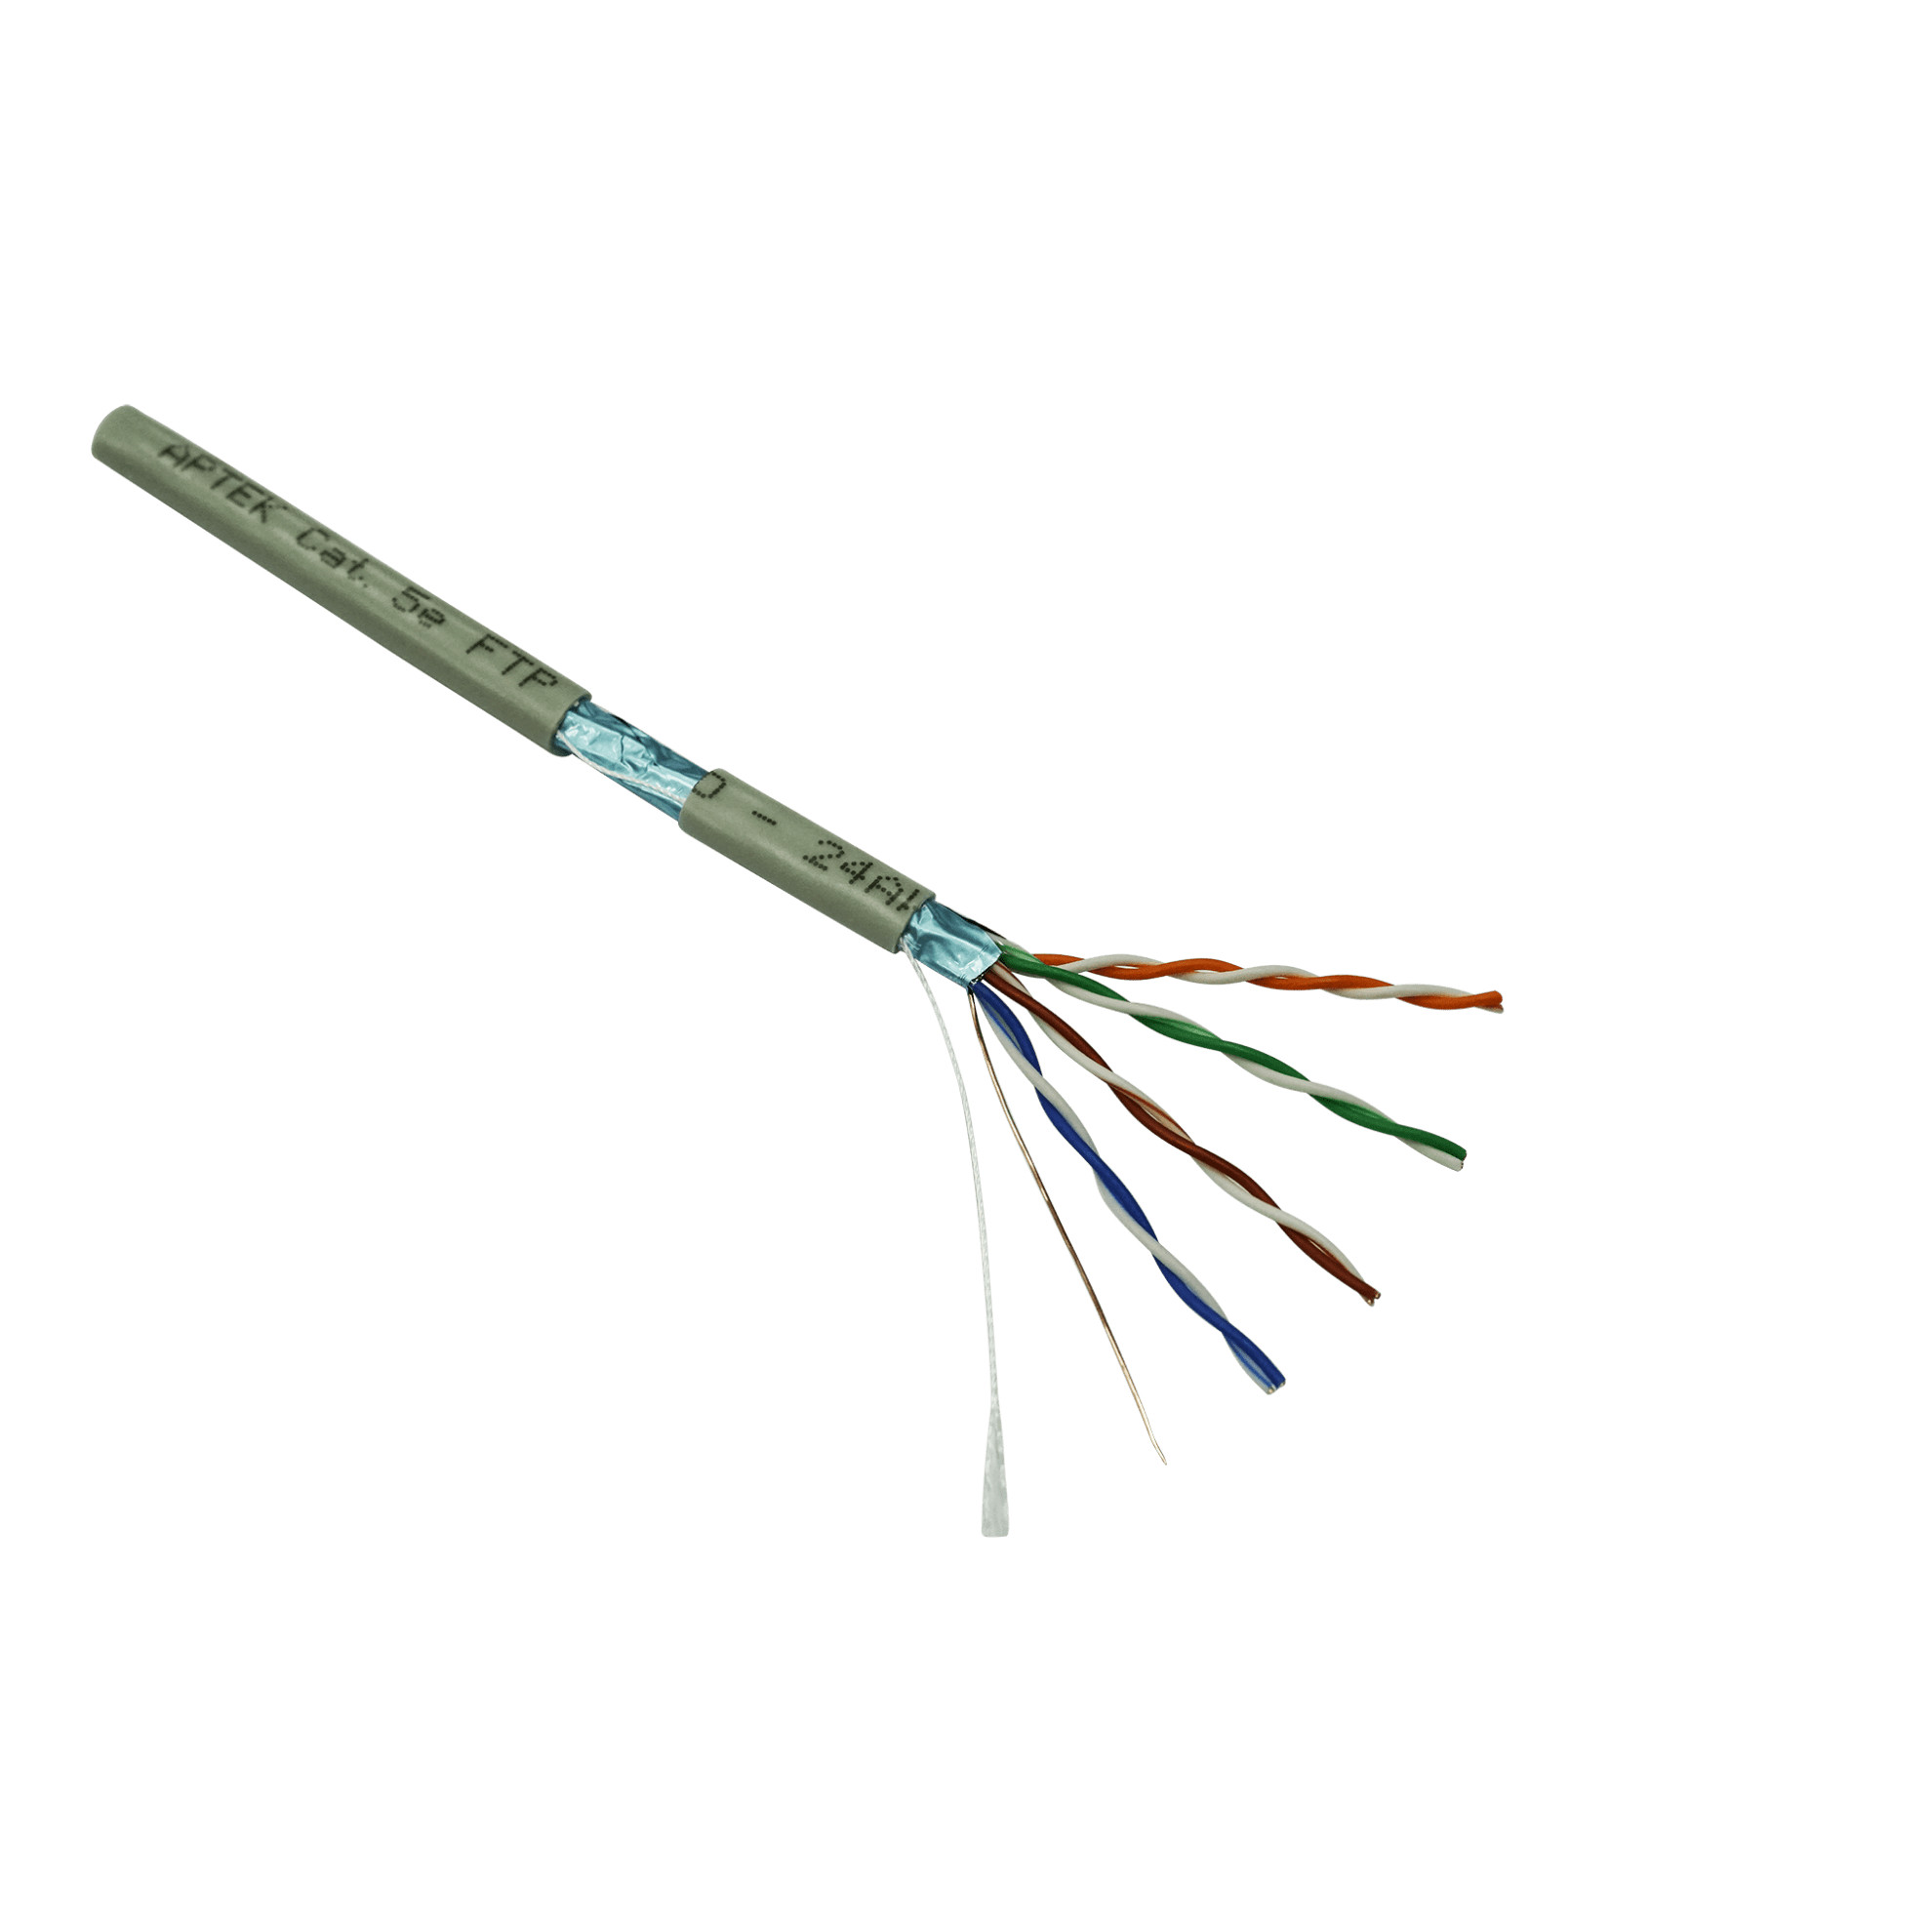 Cáp mạng APTEK Cable CAT 5e FTP 305m (530-2106-1) - Hàng Chính Hãng